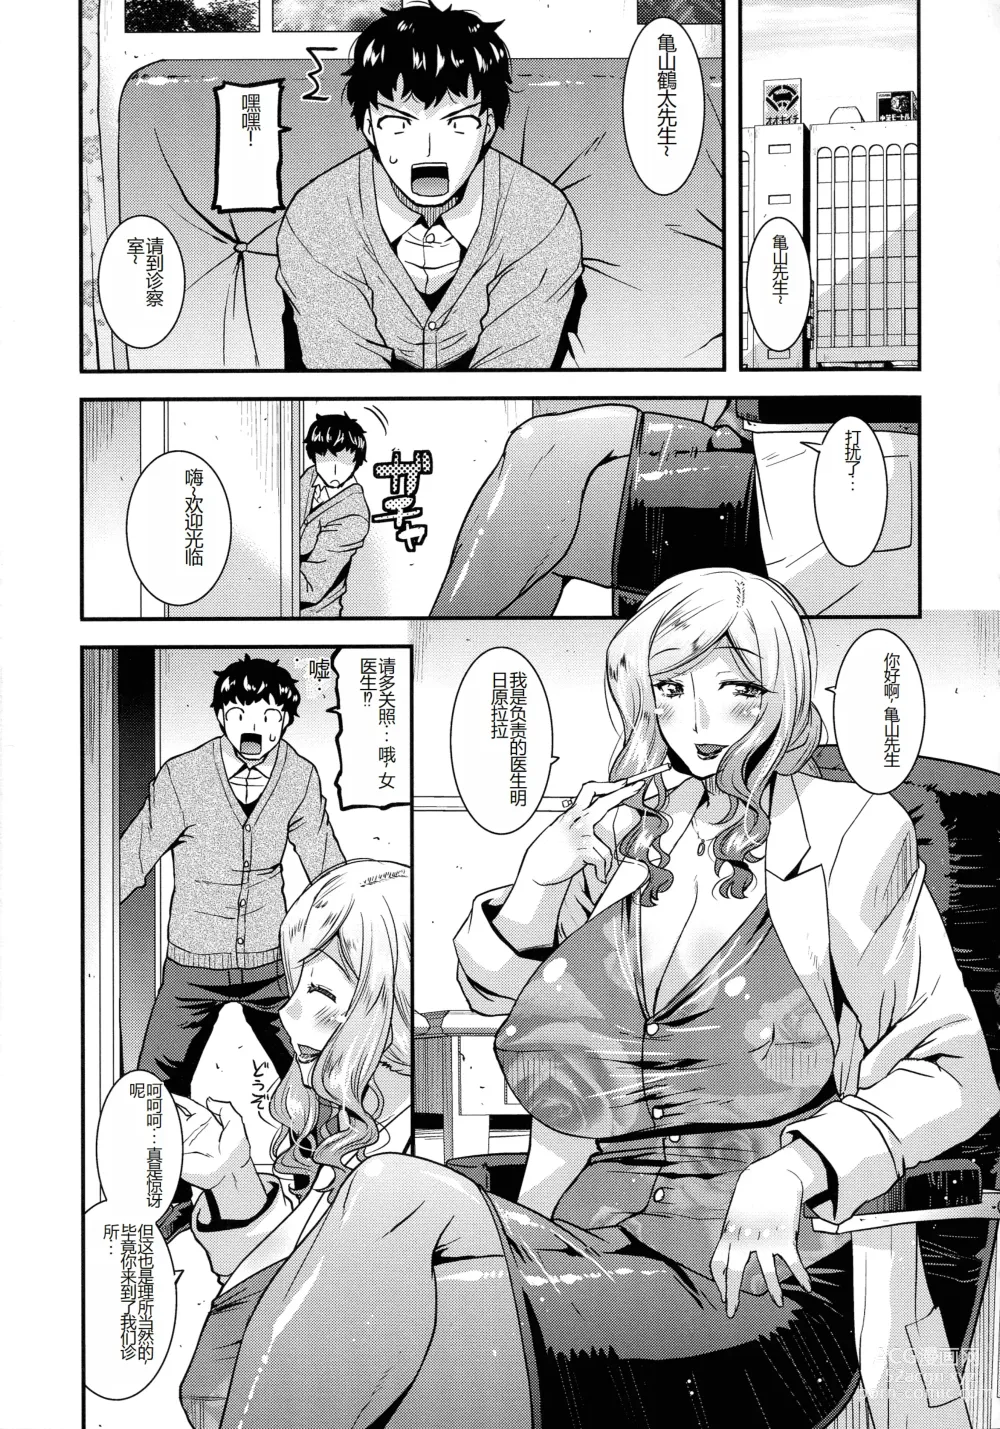 Page 176 of manga Kobibiyori no Midarazuma